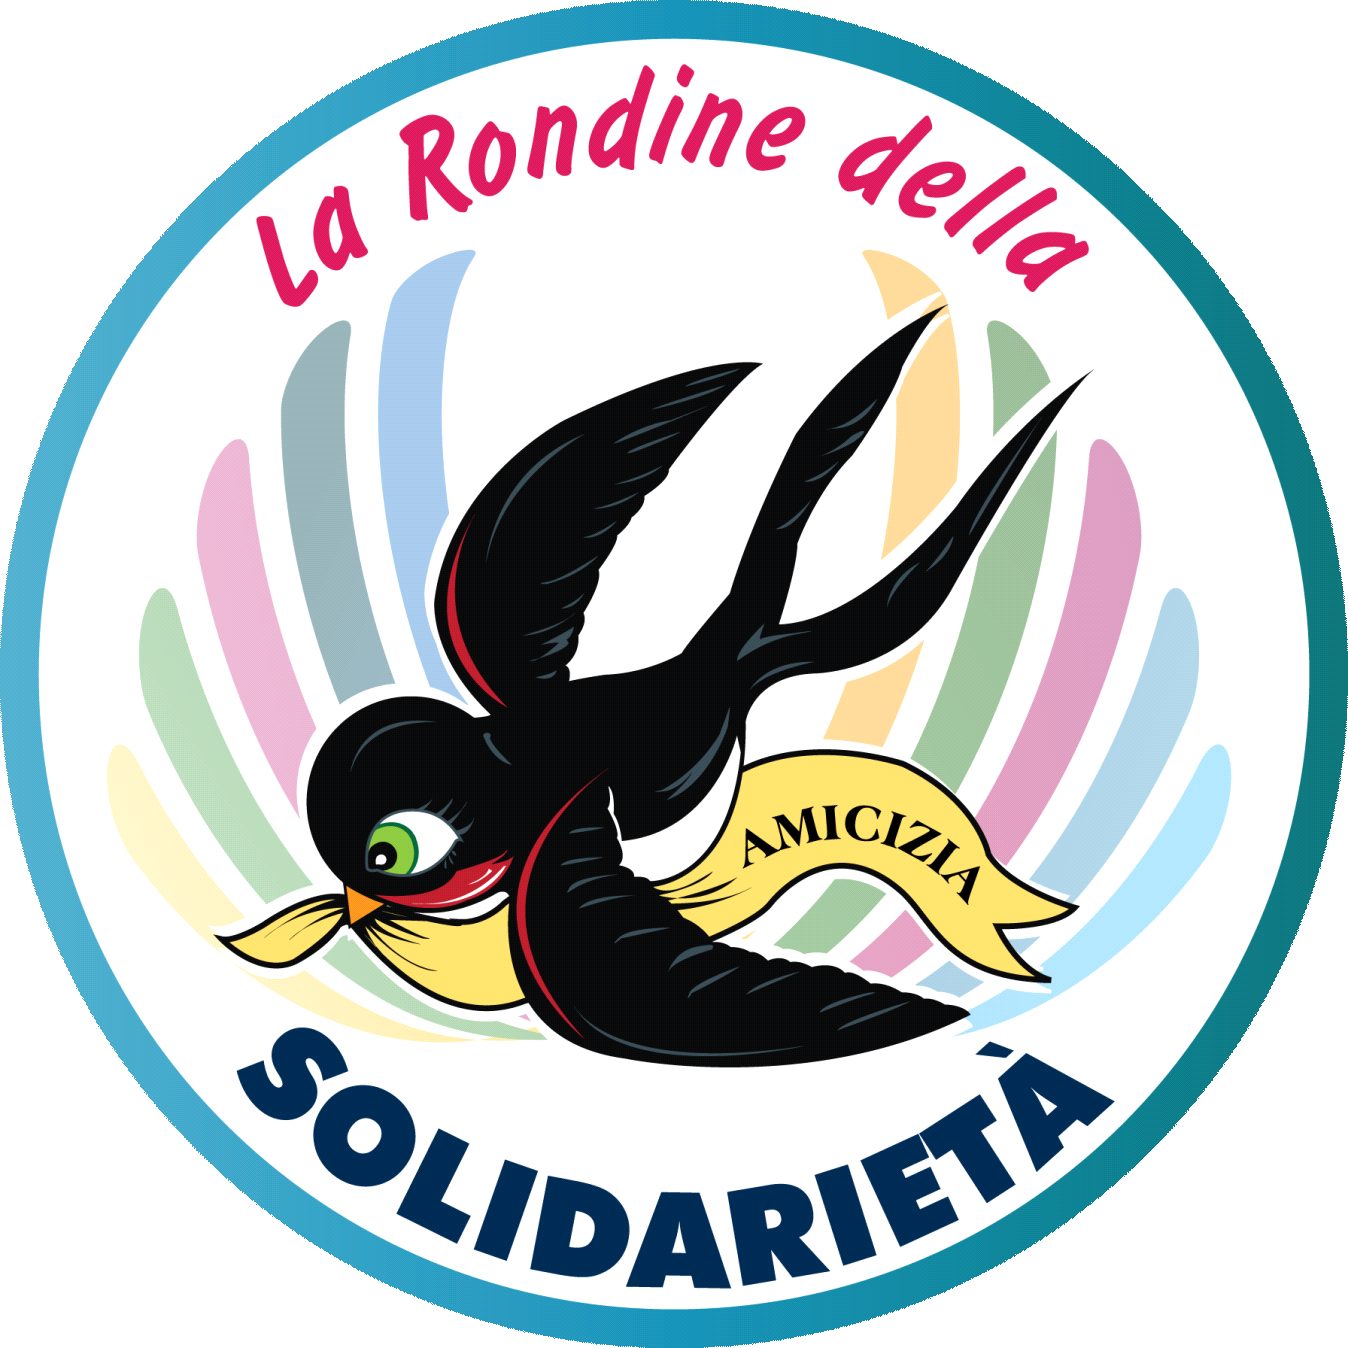 La Rondine della Solidarietà per l'Emilia Romagna